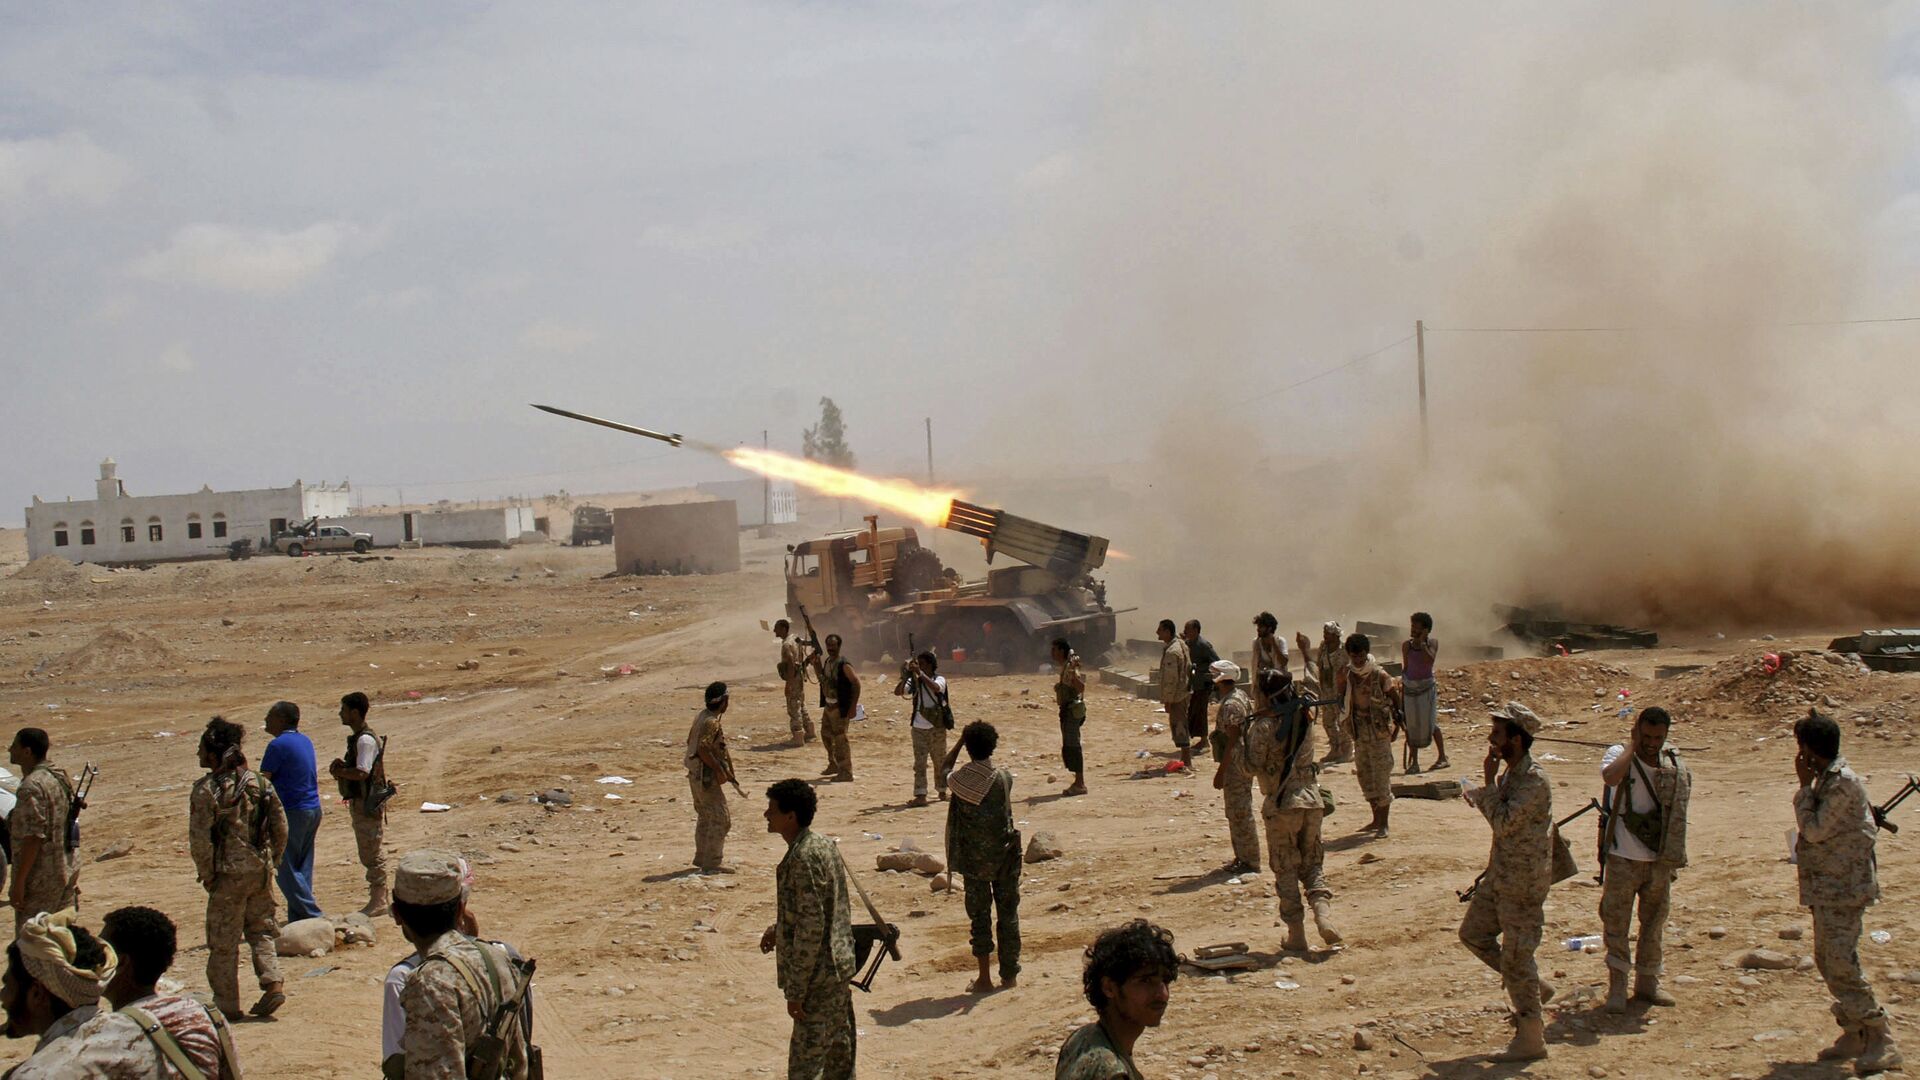 جنود من الجيش اليمني يطلقون صواريخ - سبوتنيك عربي, 1920, 26.05.2021